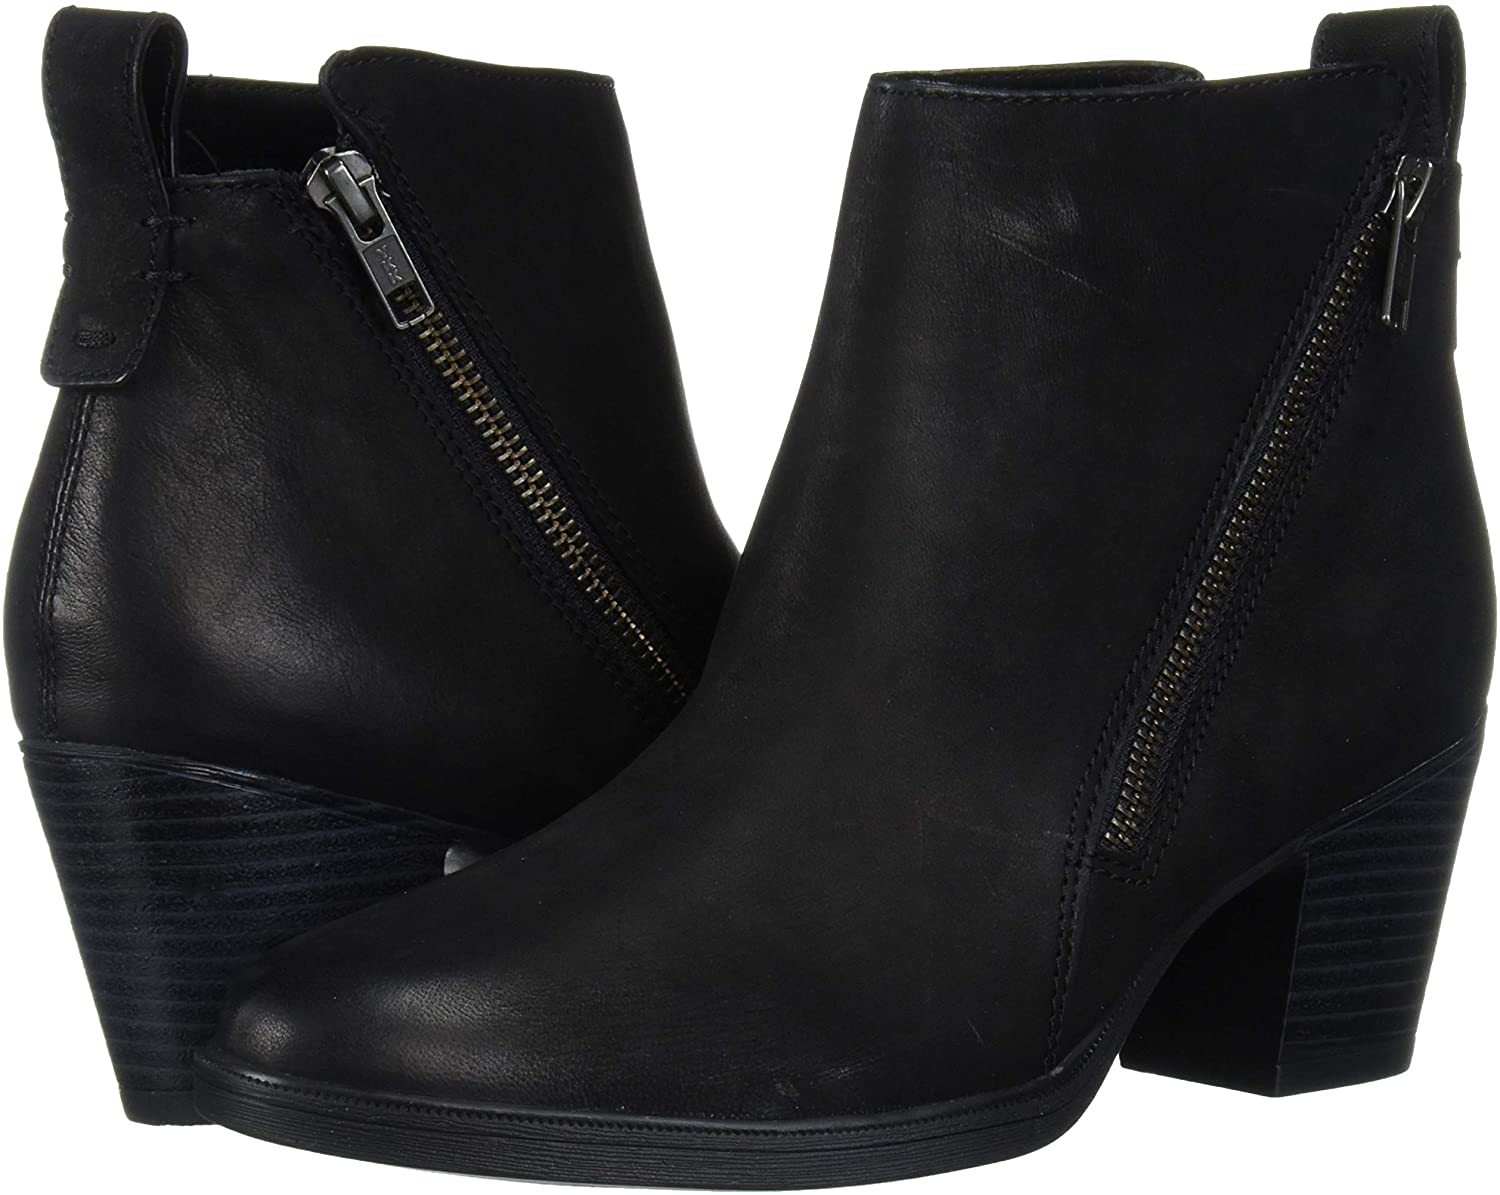 Rockport Women's Maddie Ankle Zip Bt Boot, Black, Size 8.5 W73T | eBay